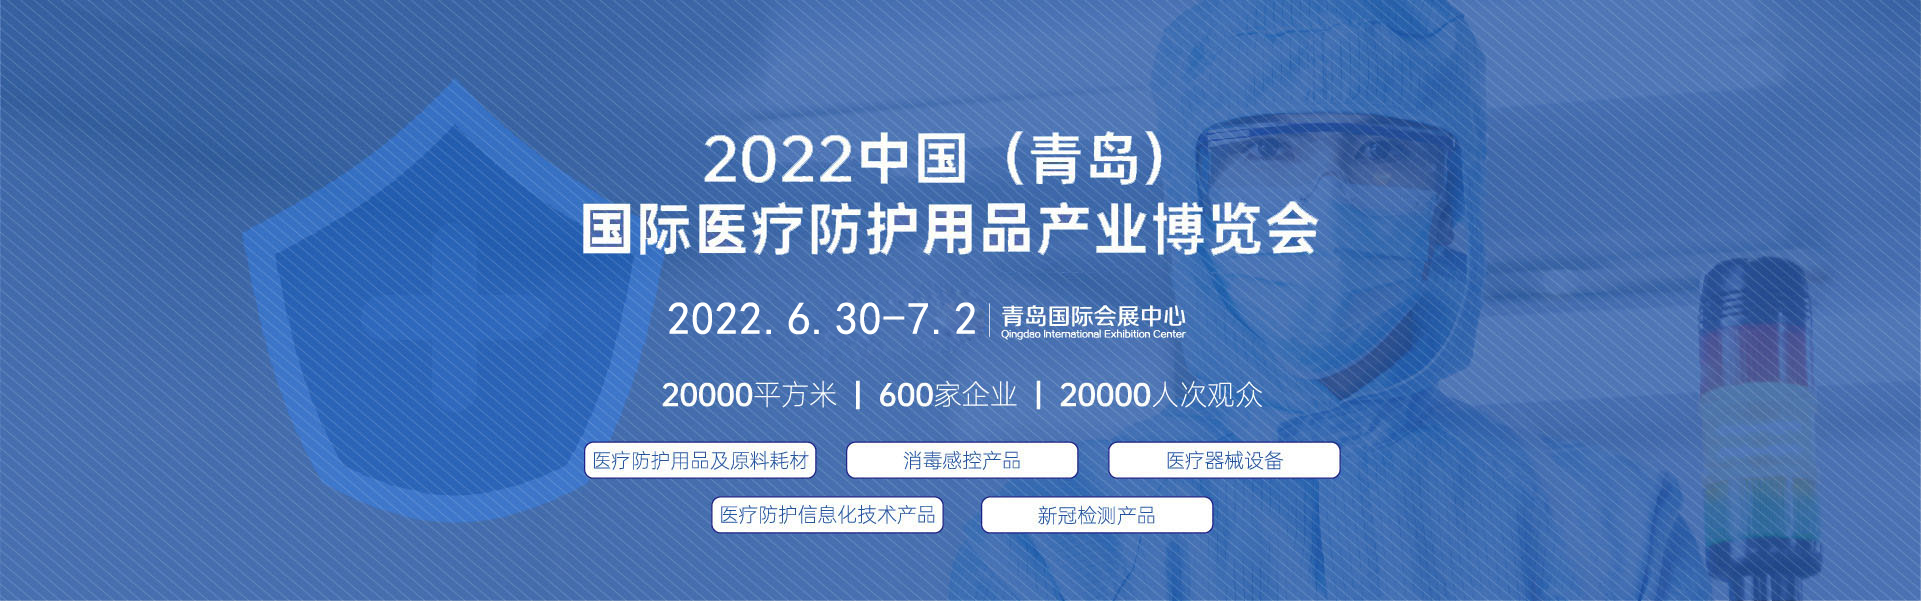 2022年青岛国际医疗防护用品产业博览会